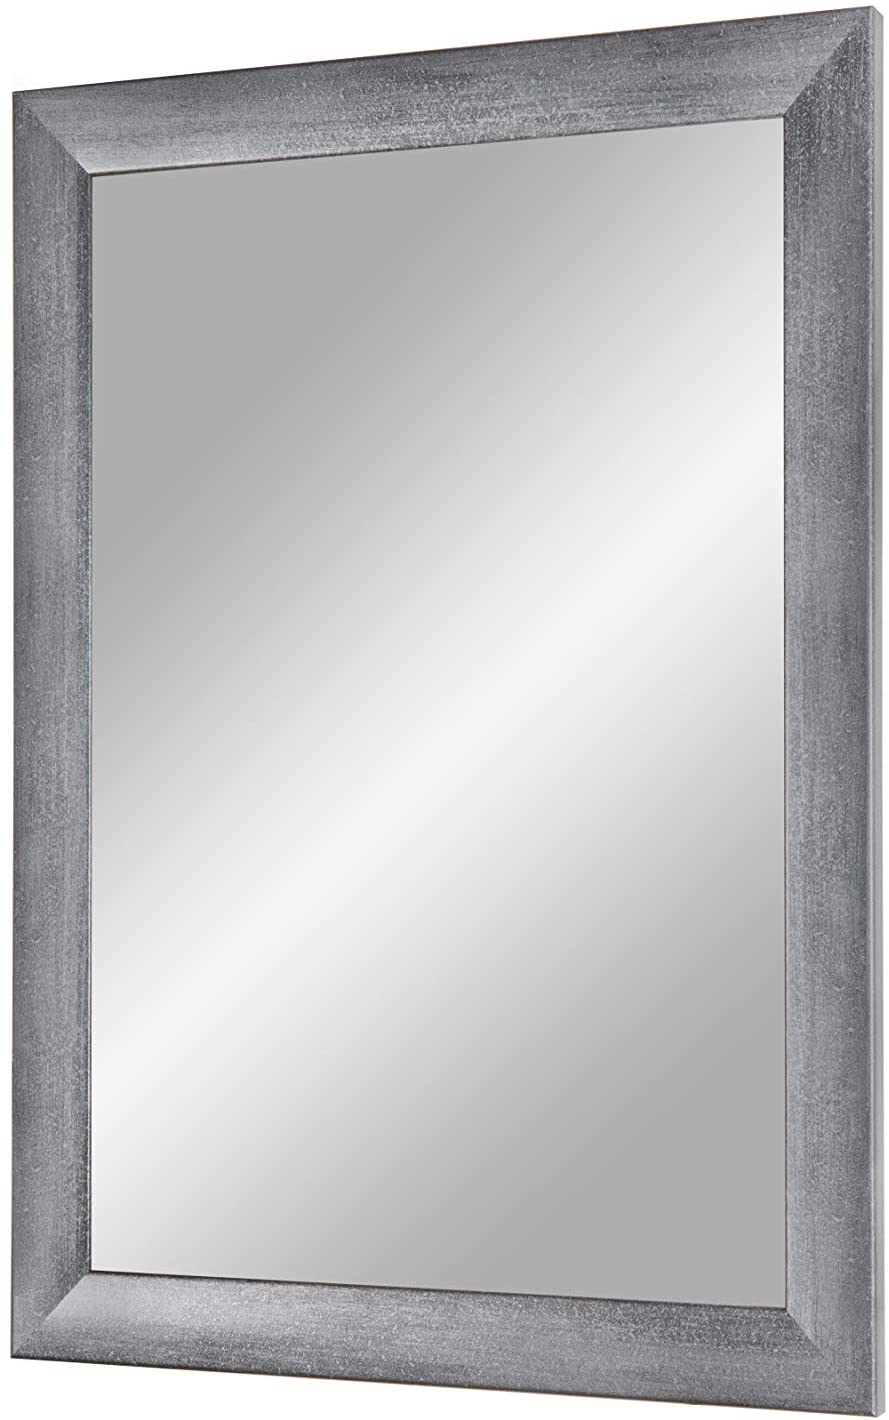 EXCLUSIV Wandspiegel nach Maß (Grau-gewischt), Maßgefertigter Spiegelrahmen inkl. Spiegel und stabiler Rückwand mit Aufhängern